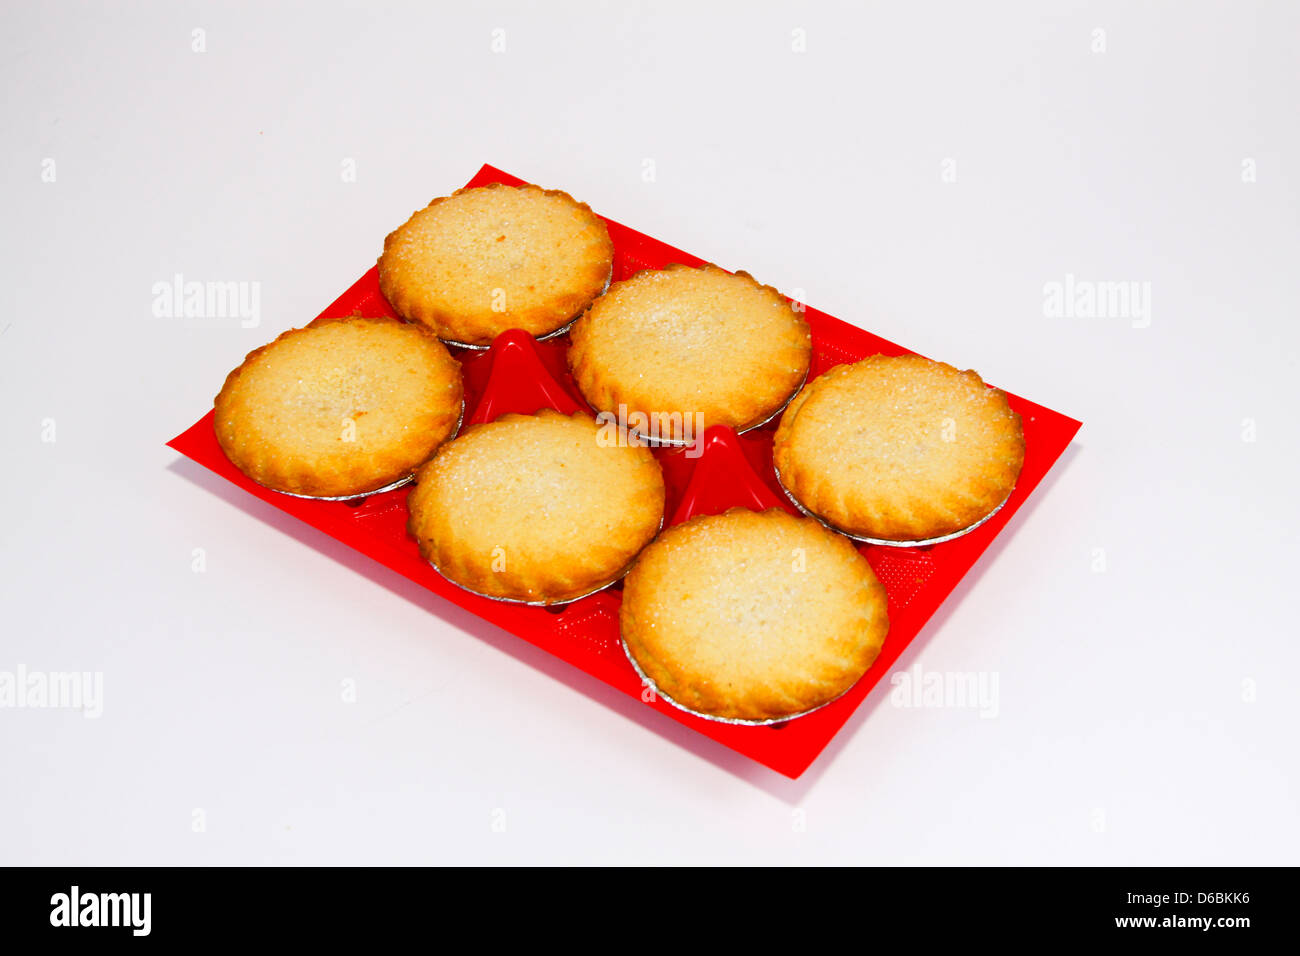 Shop acquistato singoli torte di mele nel vassoio di plastica Foto Stock